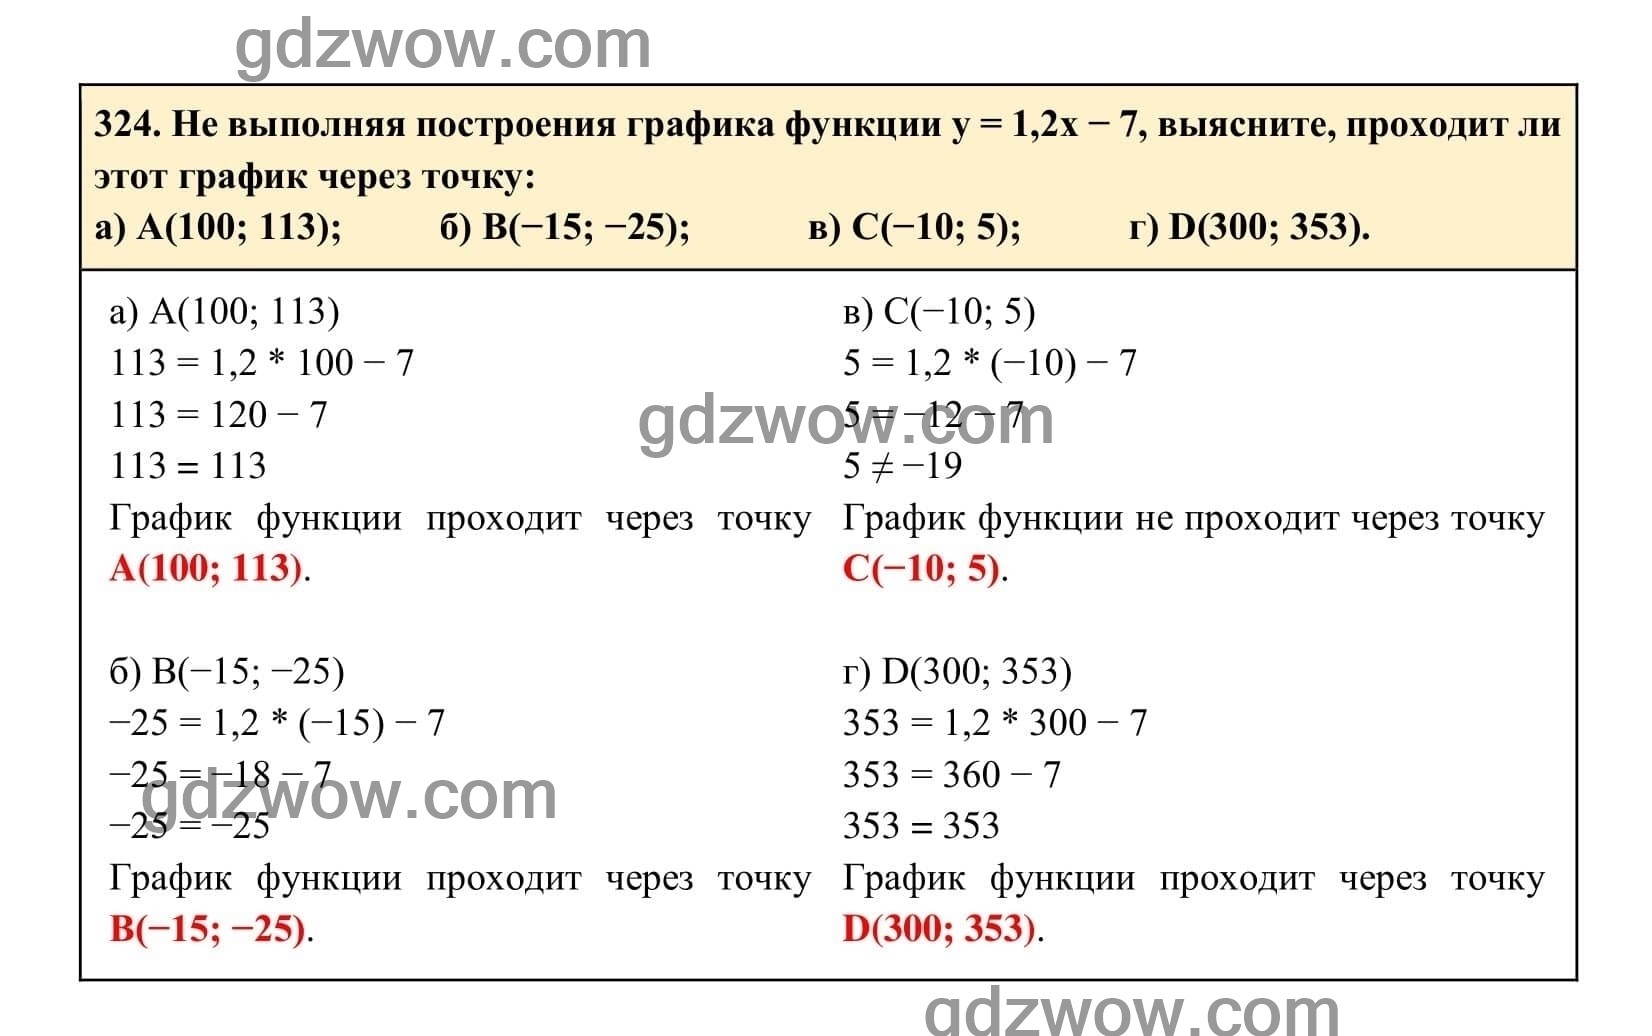 Упражнение 324 - ГДЗ по Алгебре 7 класс Учебник Макарычев (решебник) - GDZwow